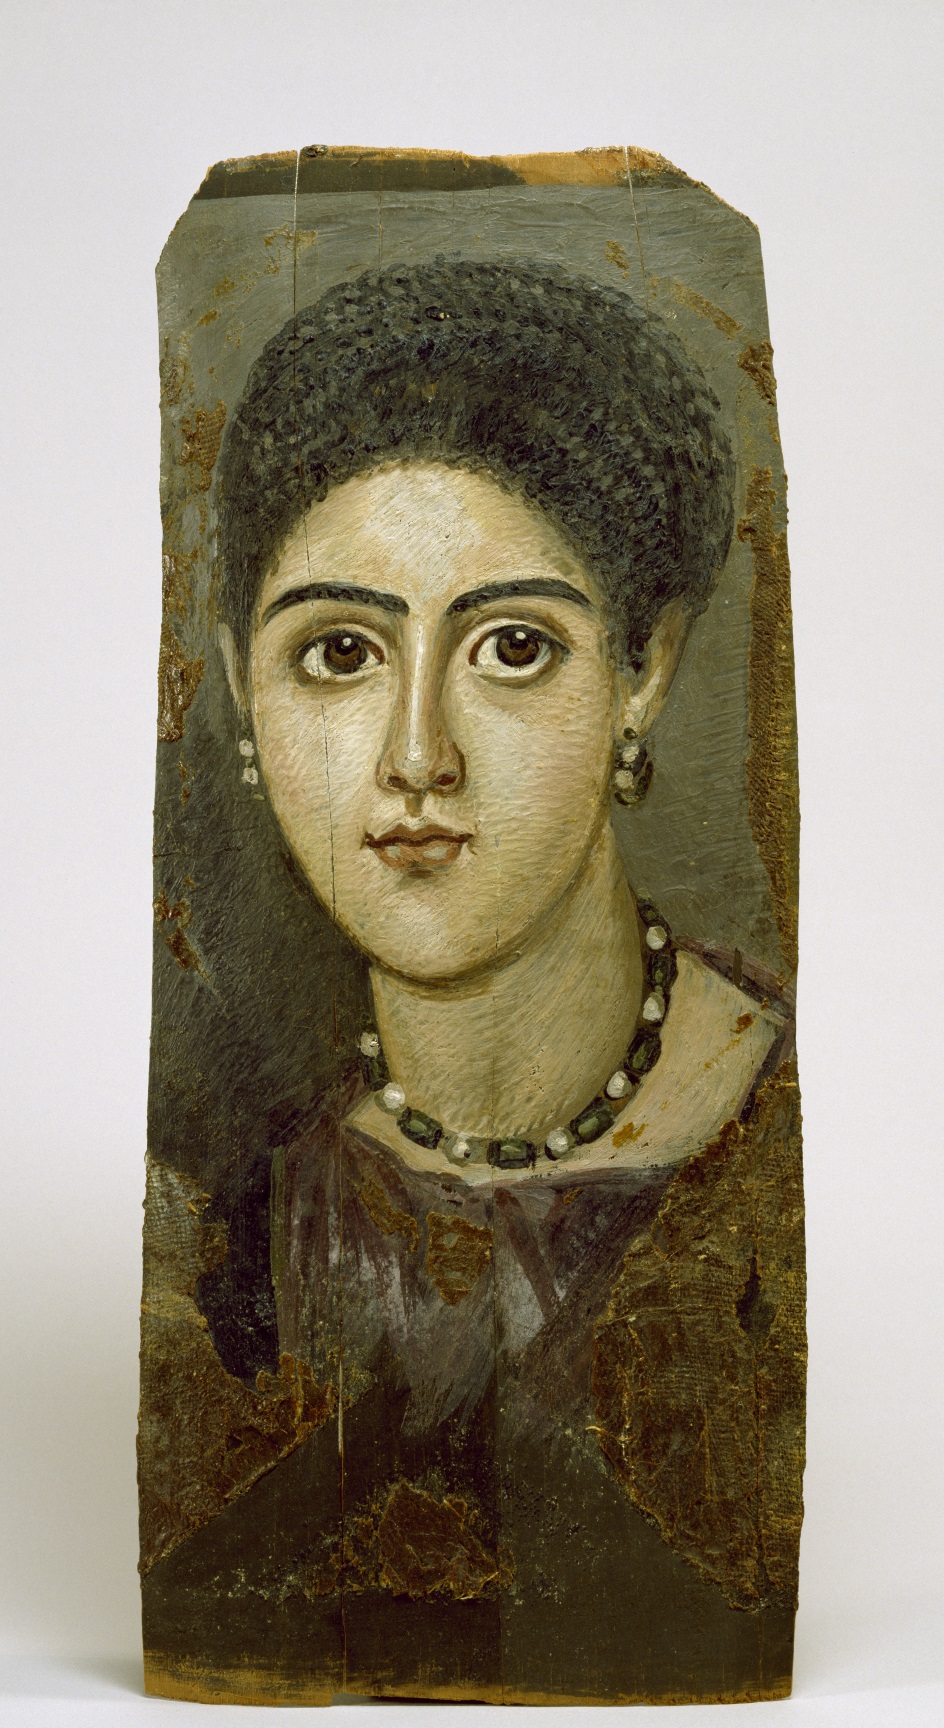 Фаюмский портрет. Женщина, жившая в эпоху правления римского императора Траяна, 98-117 гг. н. э.